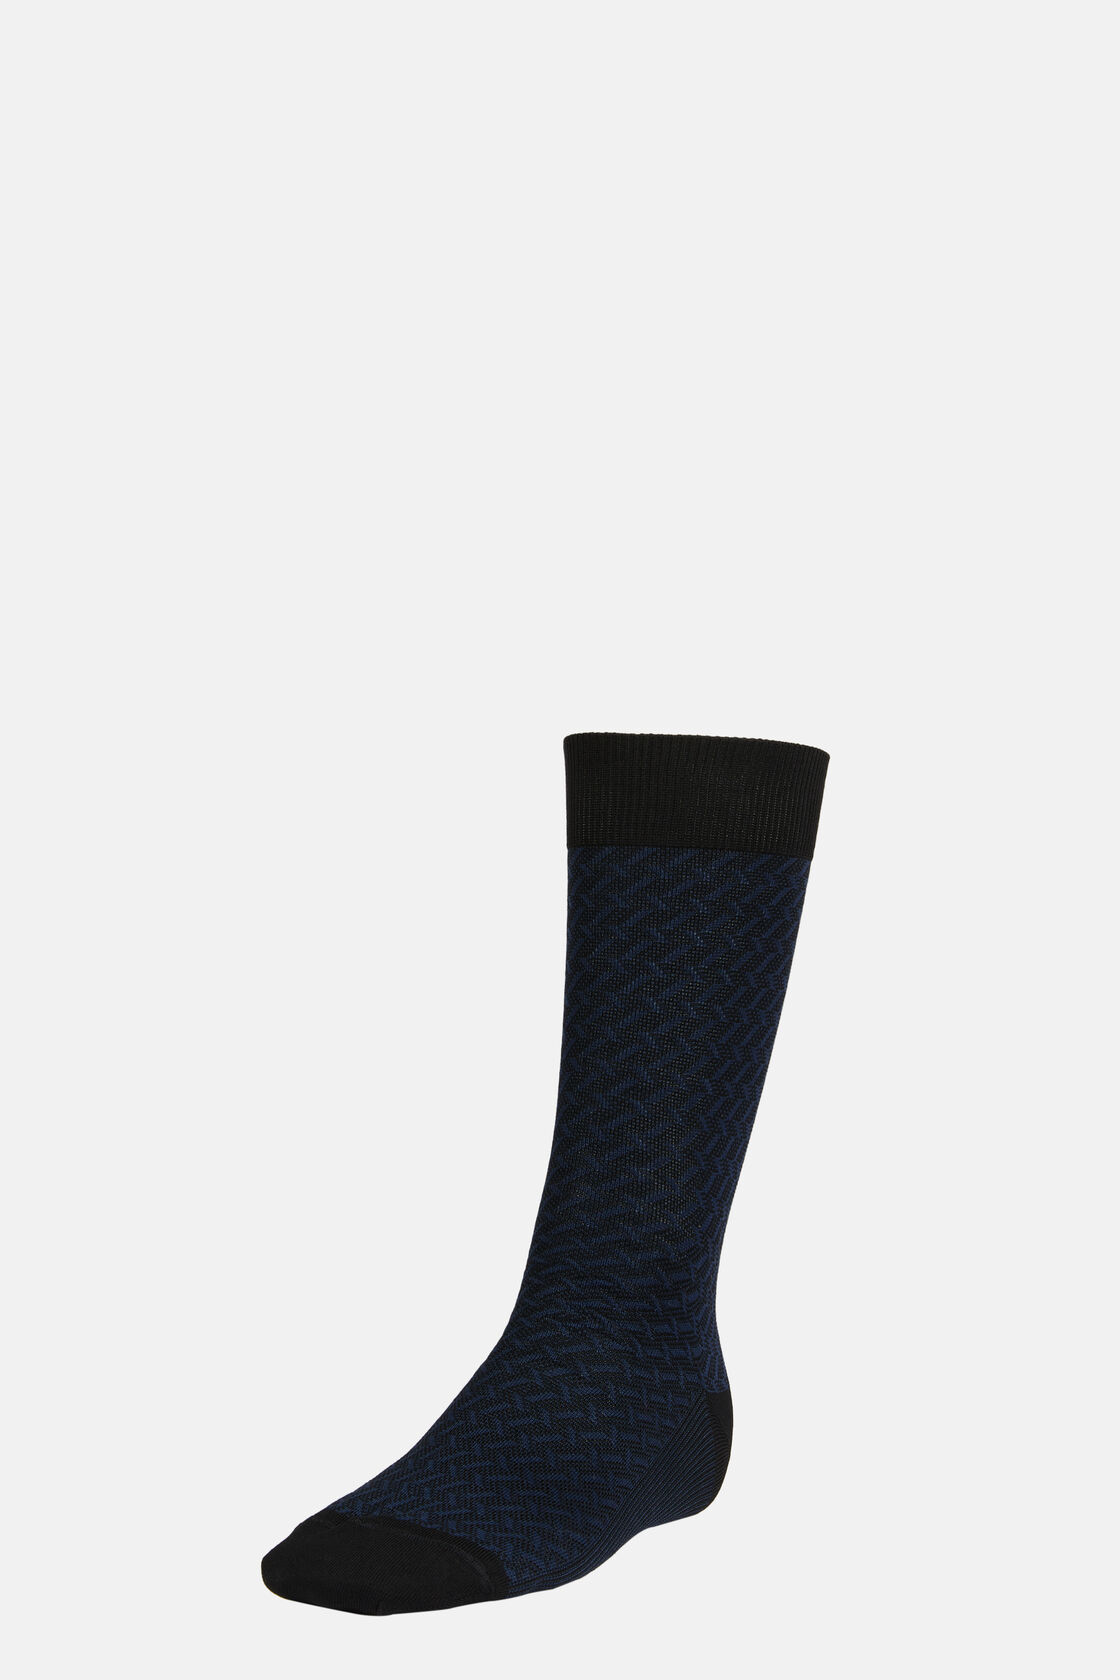 Κάλτσες με μικροσχέδιο από σύμμεικτο βαμβάκι, Navy blue, hi-res